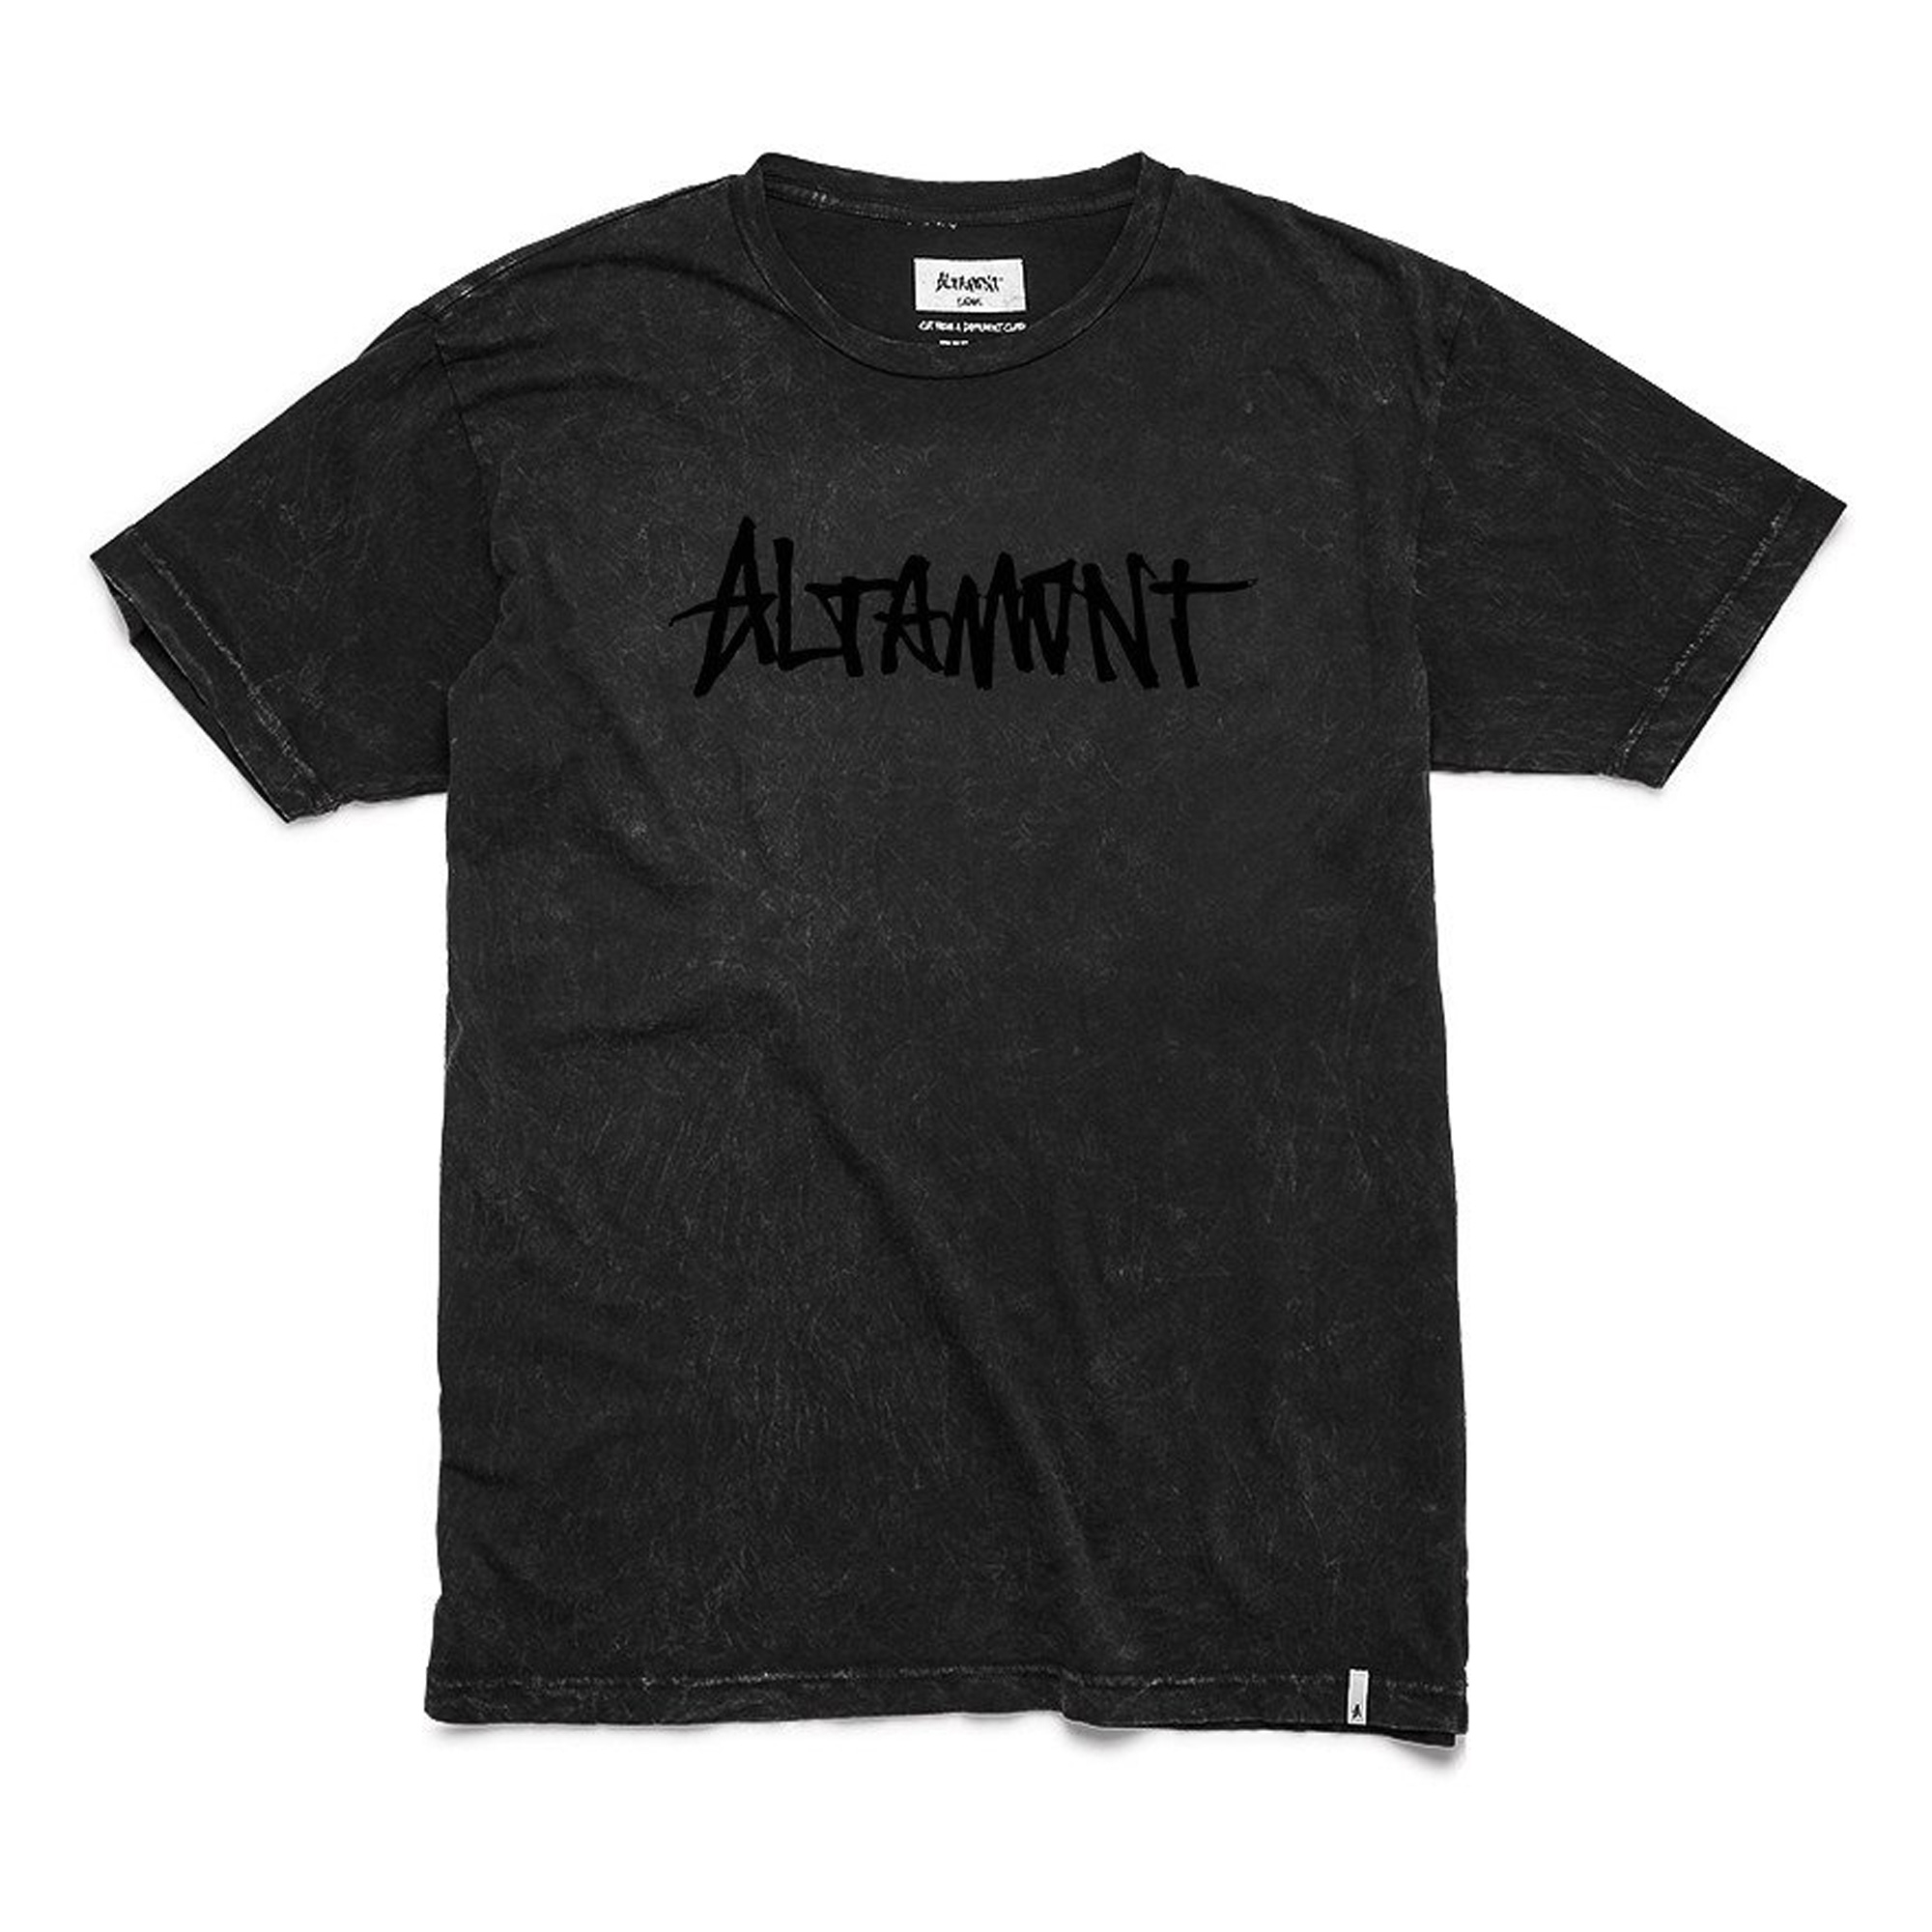 ALTAMONT T-Shirt ONE LINER WASH black/black